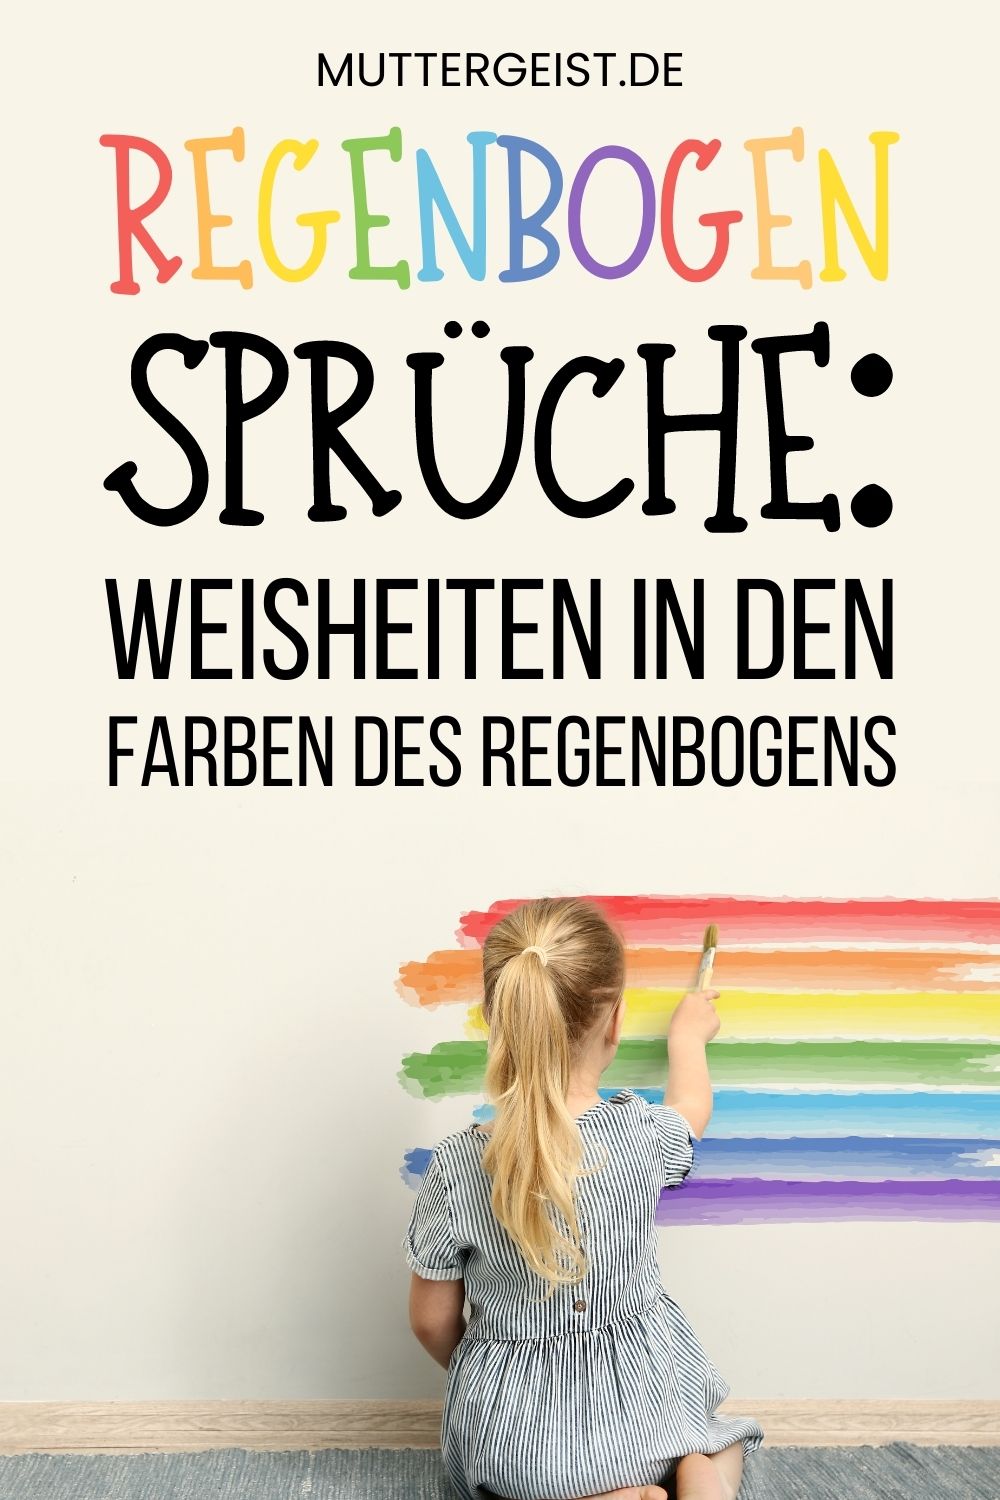 Regenbogen Sprüche – Weisheiten in den Farben des Regenbogens Pinterest